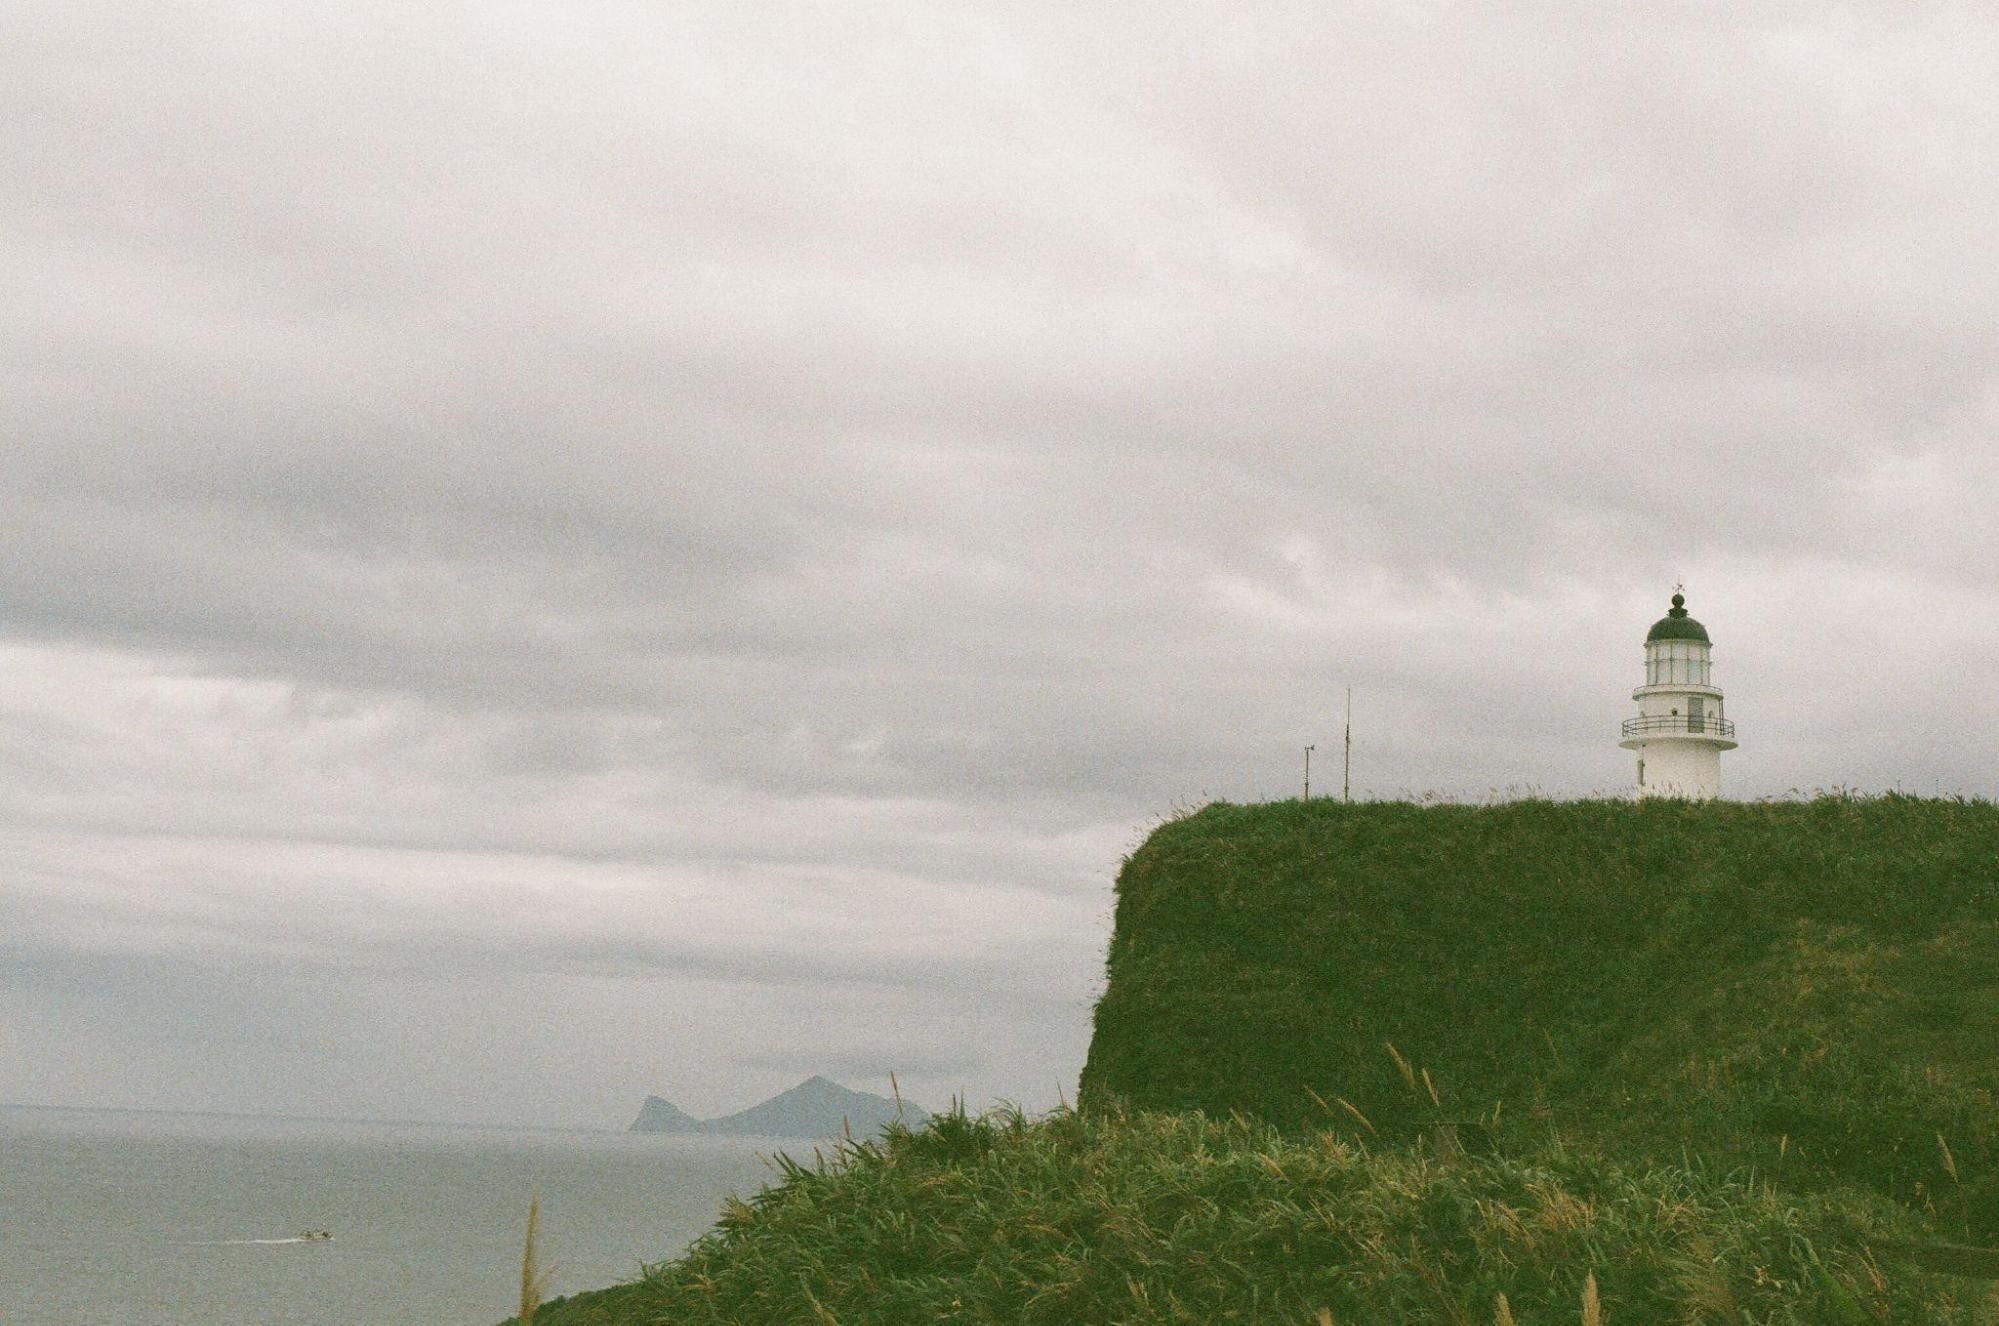 三貂角燈塔與龜山島的相對位置。敏迪提供